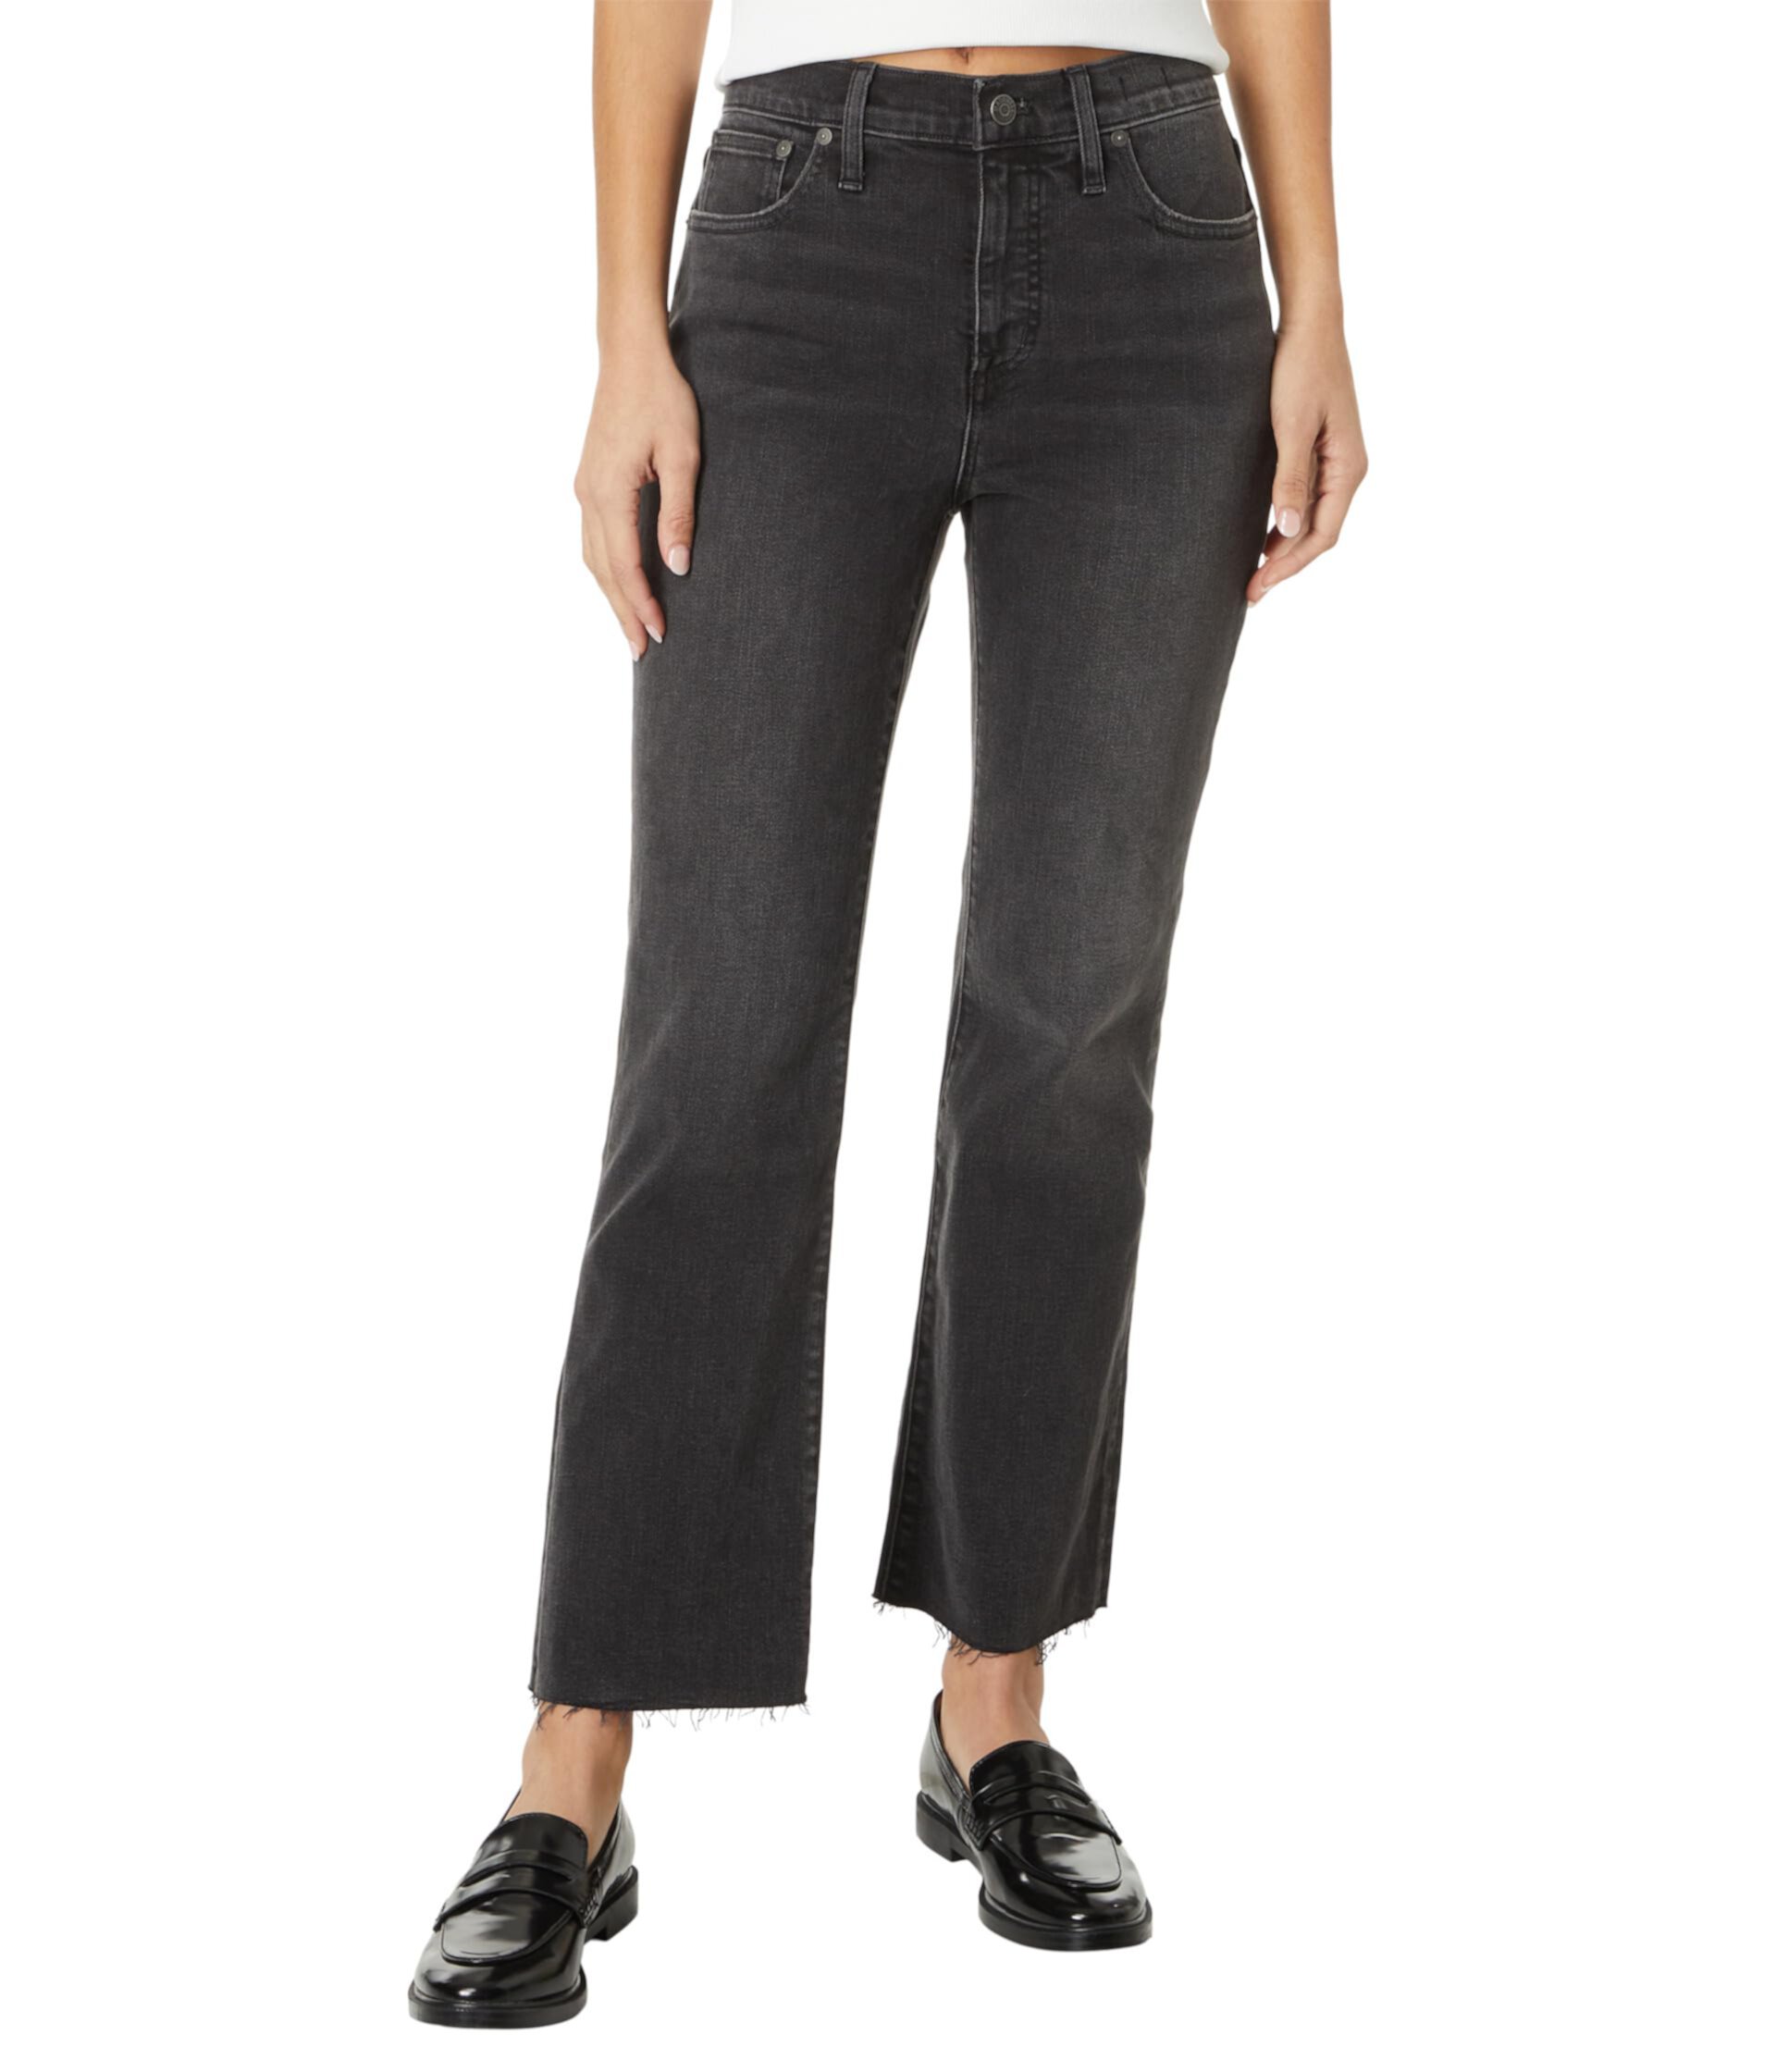 Укороченные джинсы Kick Out черного цвета: Raw Hem Edition Madewell